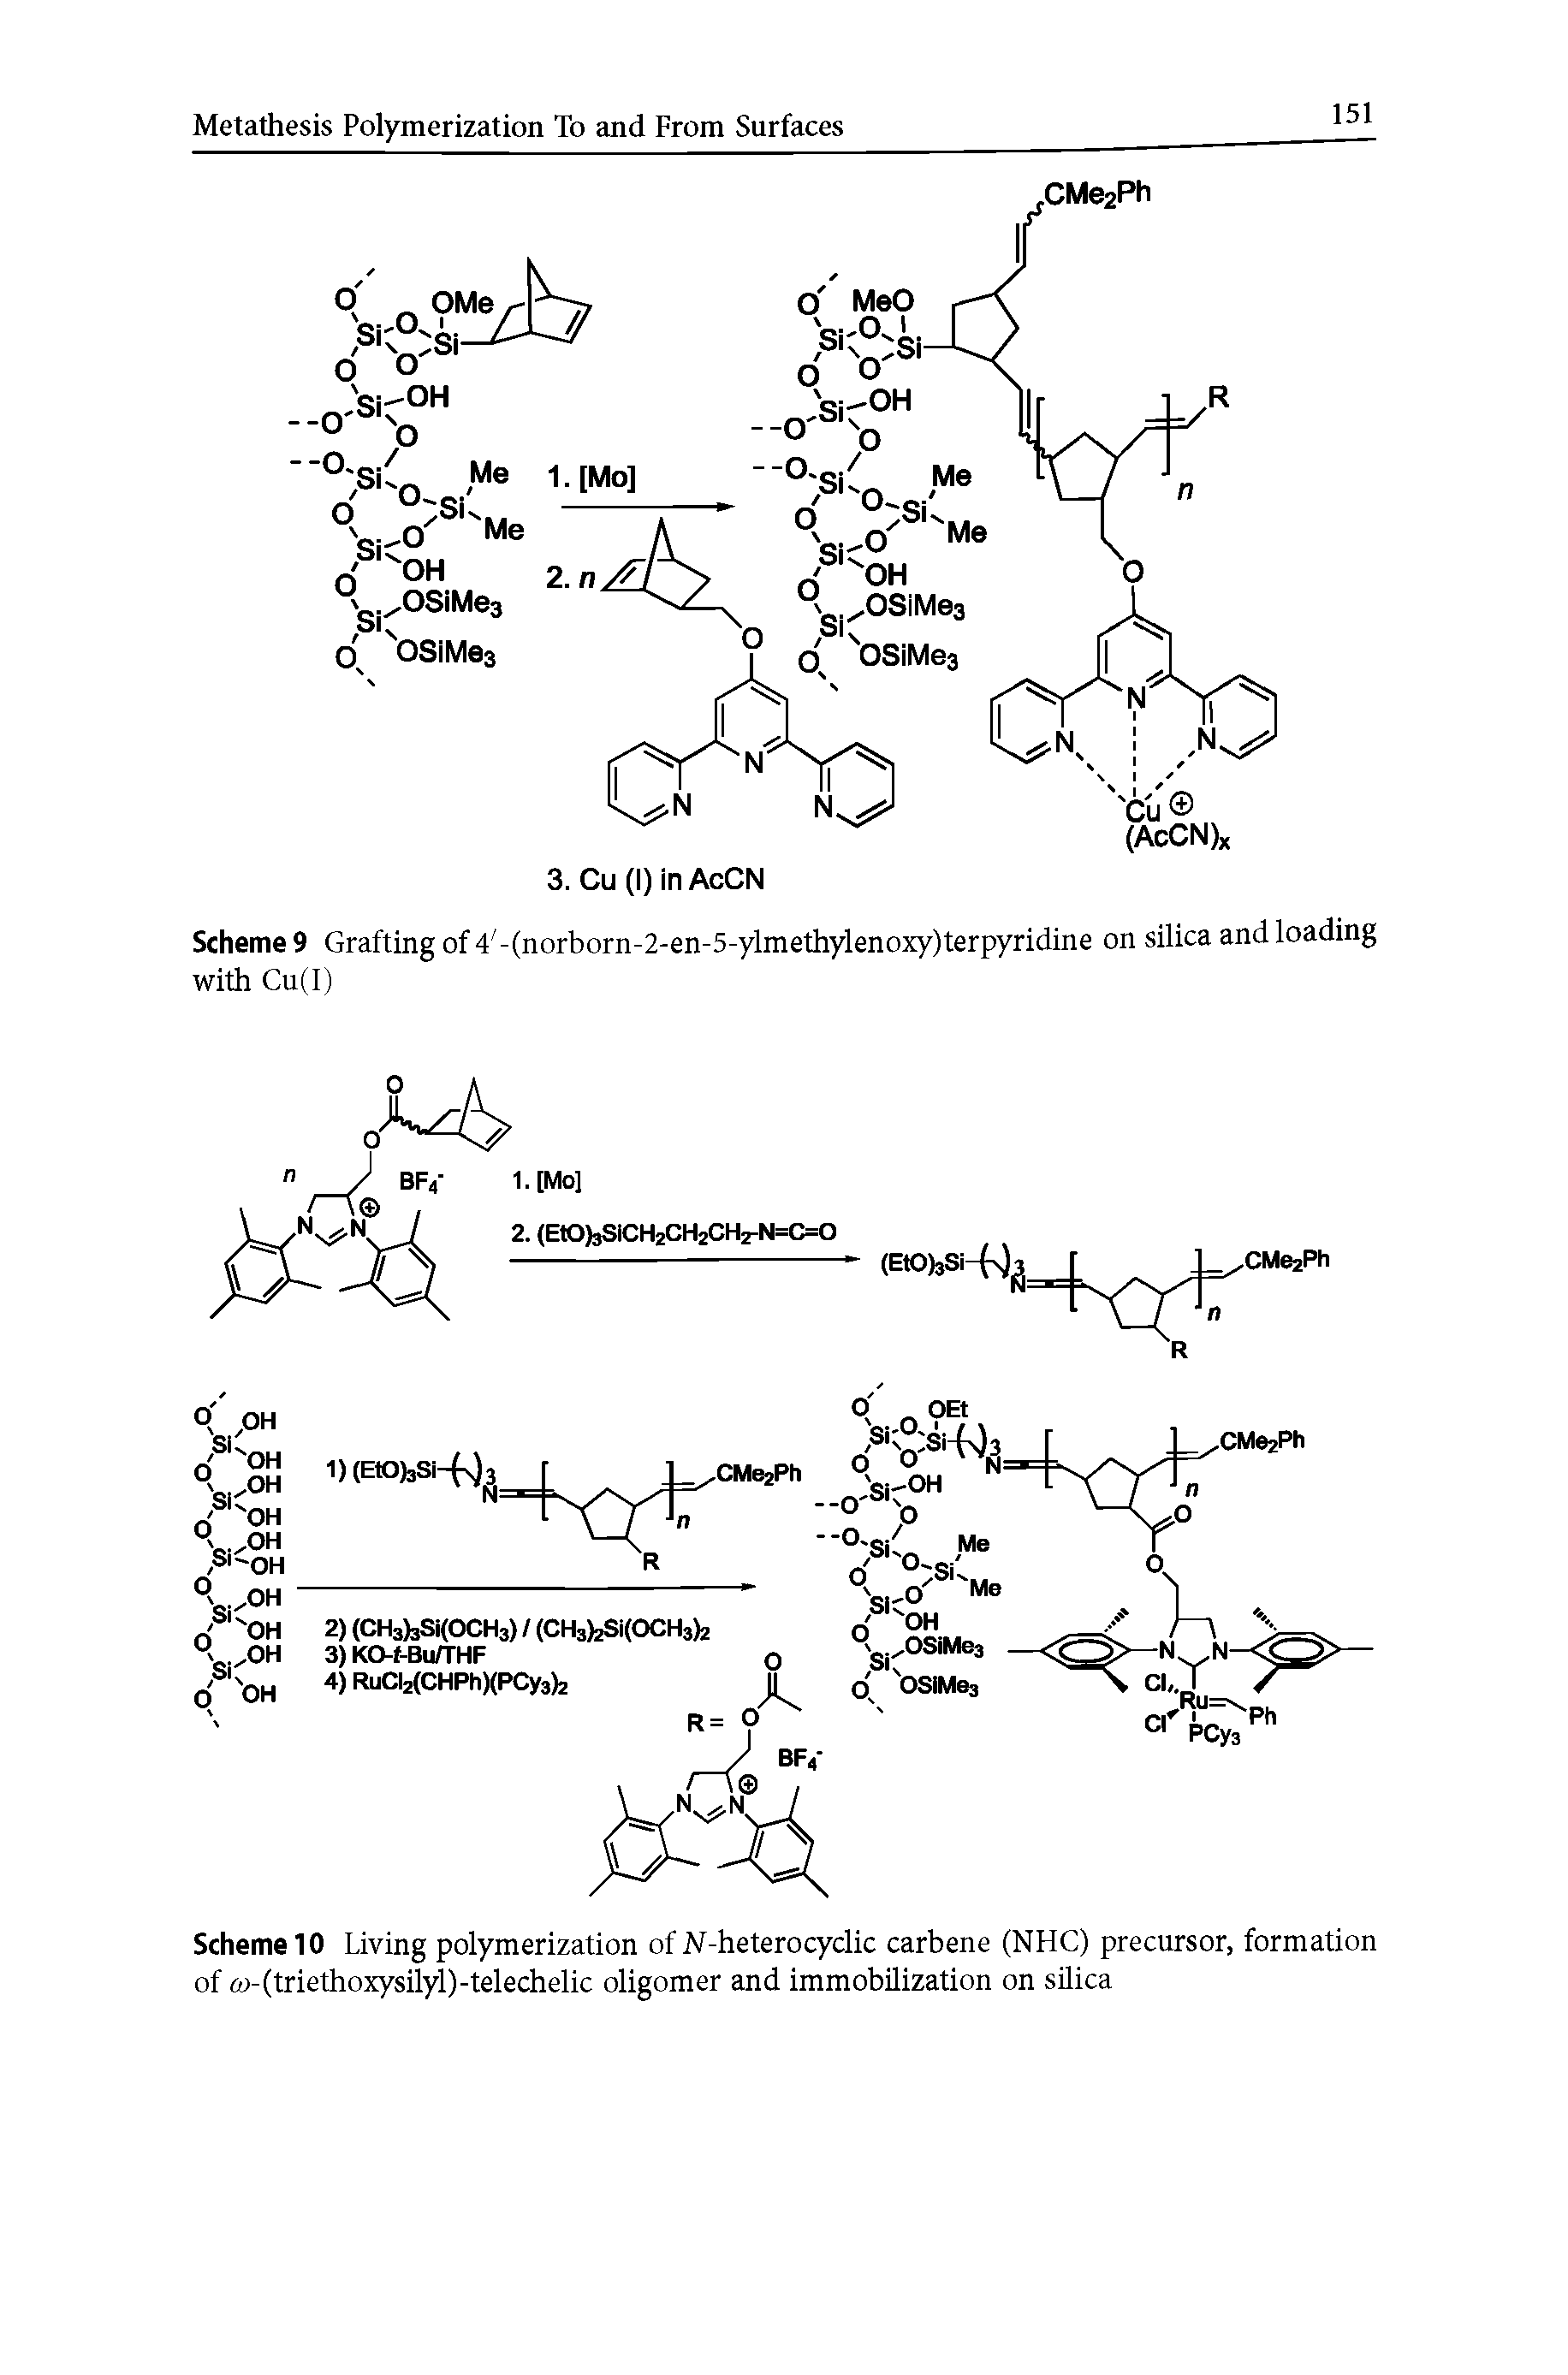 Scheme 10 Living polymerization of W-heterocyclic carbene (NHC) precursor, formation of (u-(triethoxysilyl)-telechelic oligomer and immobilization on silica...